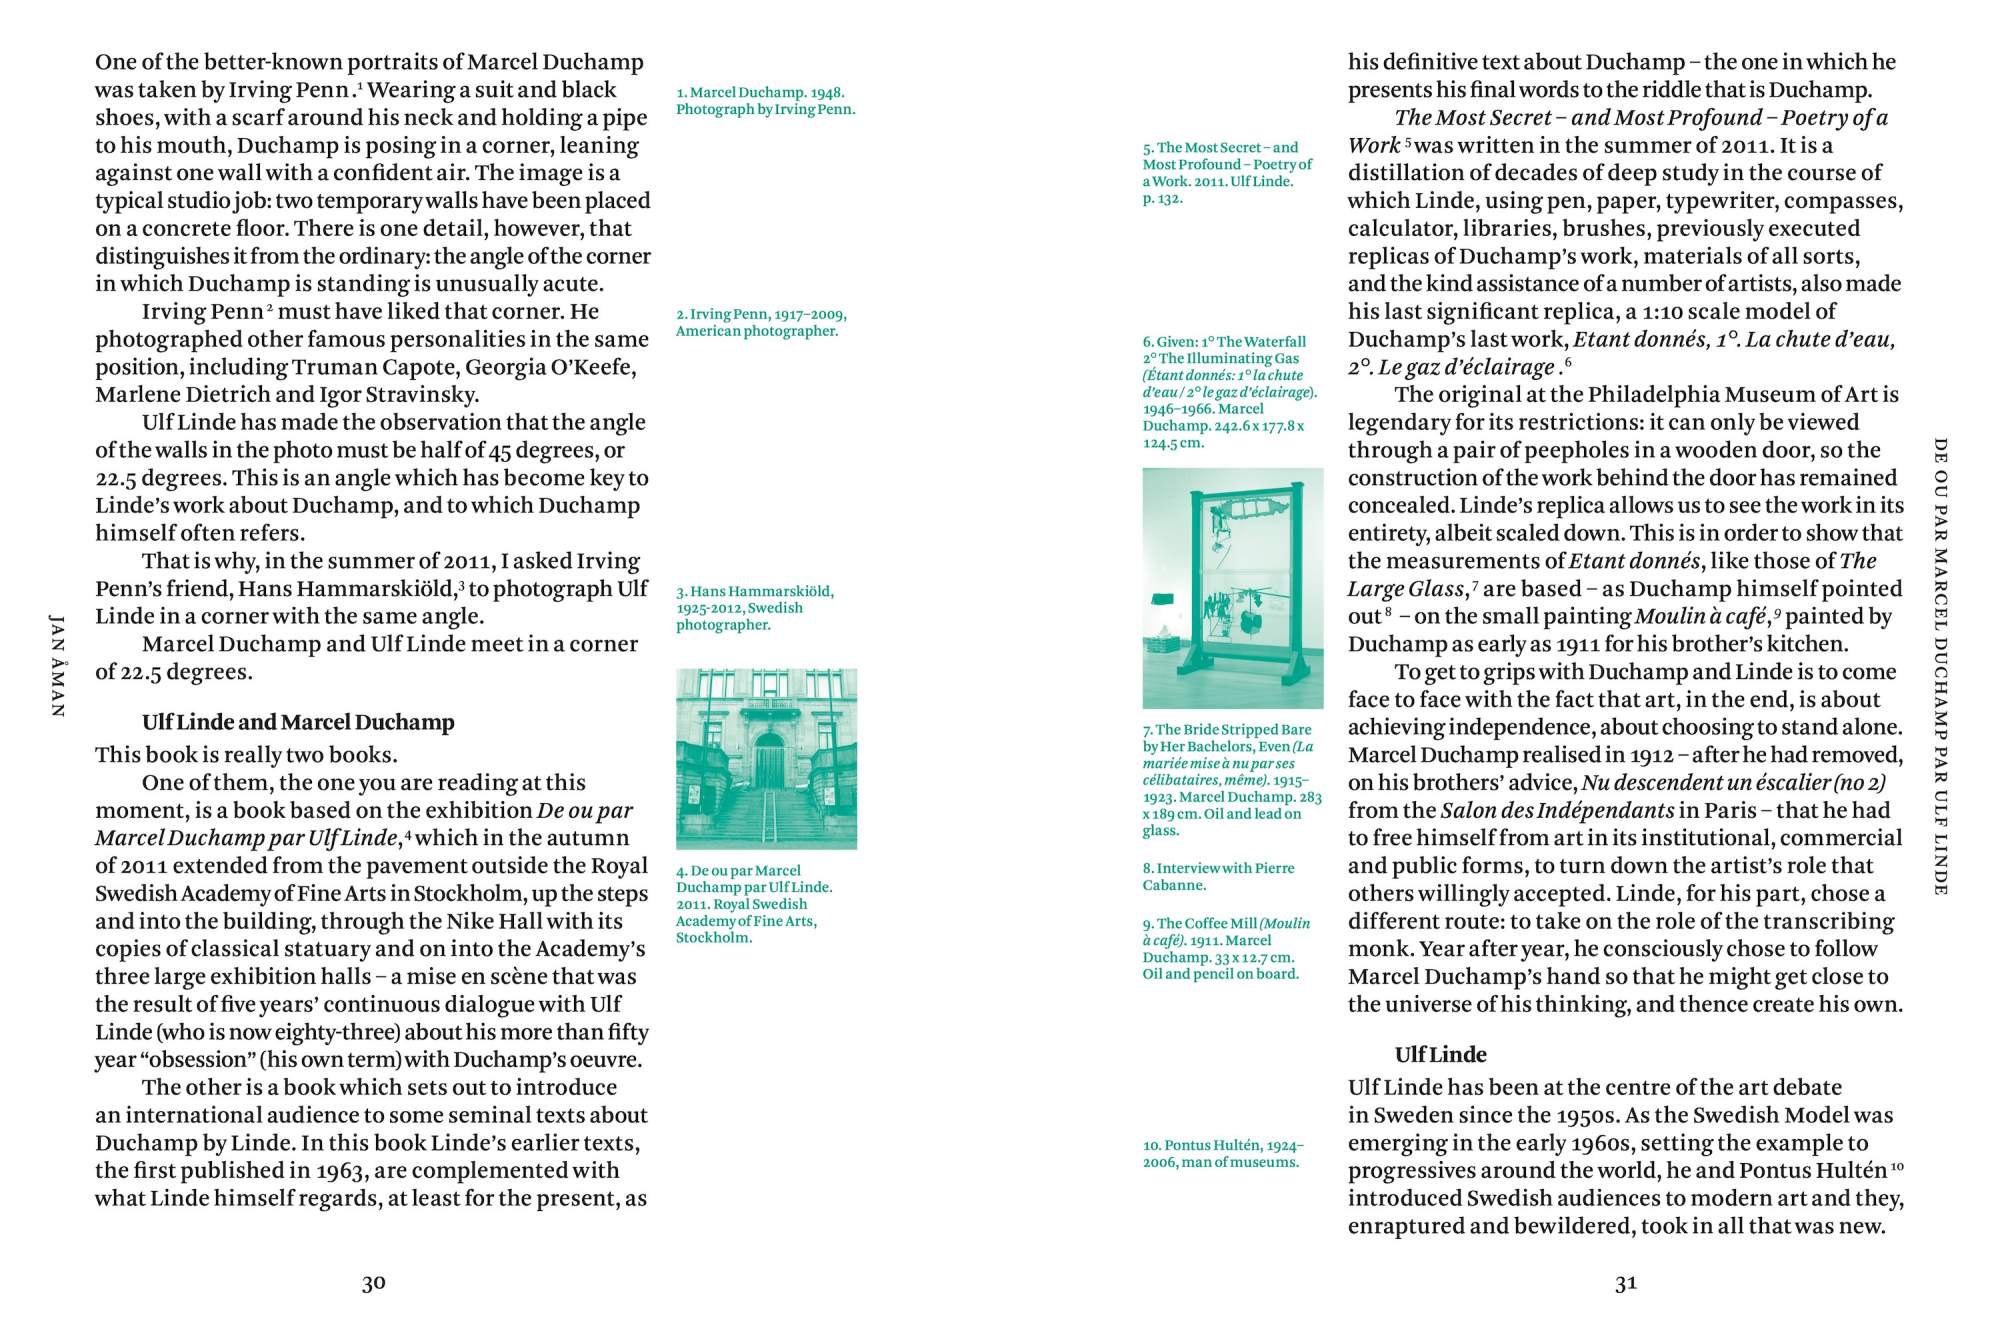 De ou par Marcel Duchamp par Ulf Linde – Sternberg Press